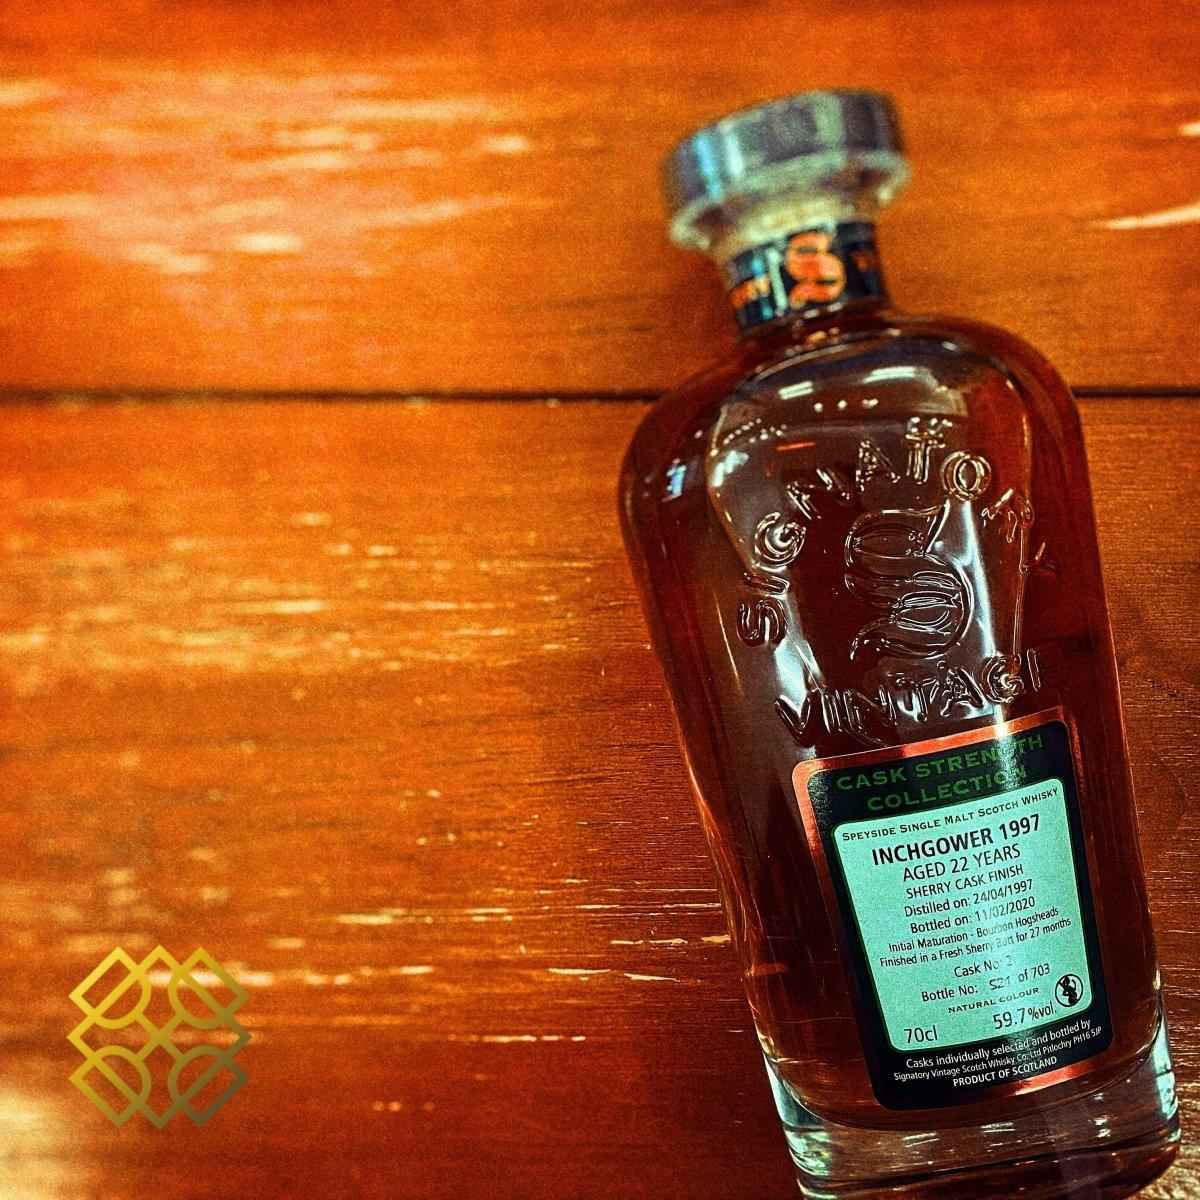 SV Inchgower - 22YO 1997/2020, Fresh sherry butt #2, 59.7%  Type : Single malt whisky